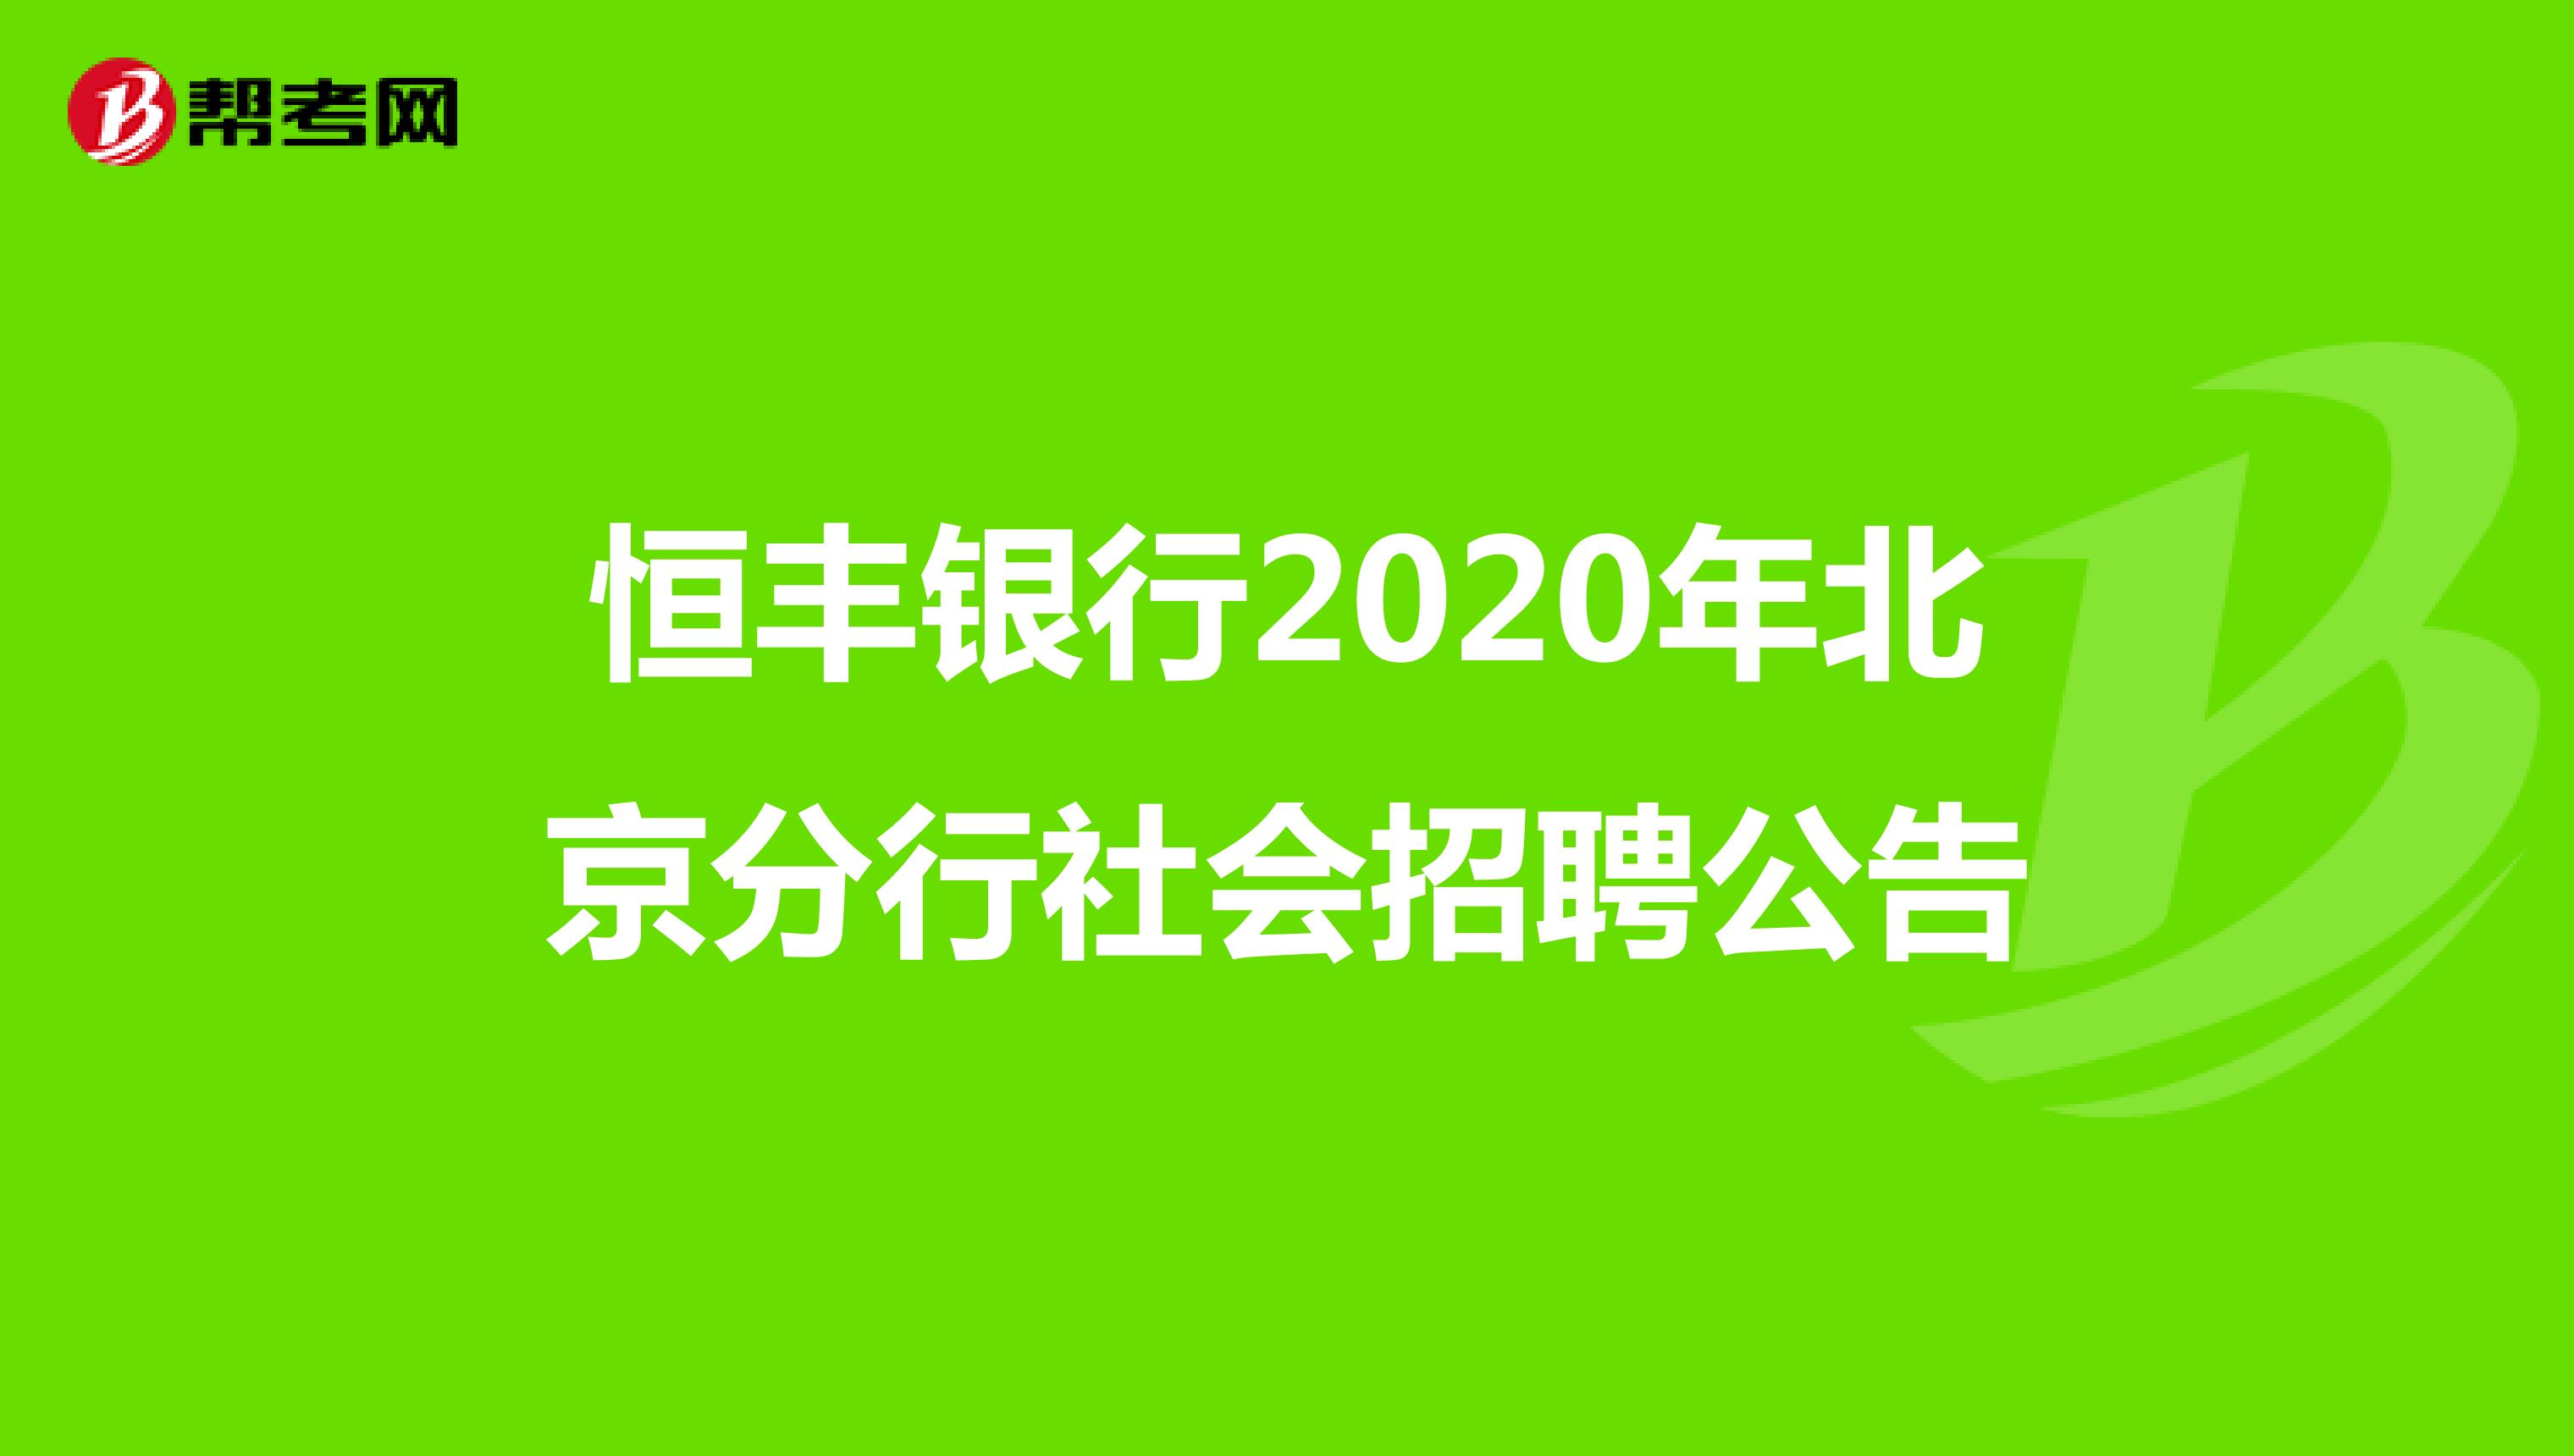 恒丰银行2020年北京分行社会招聘公告